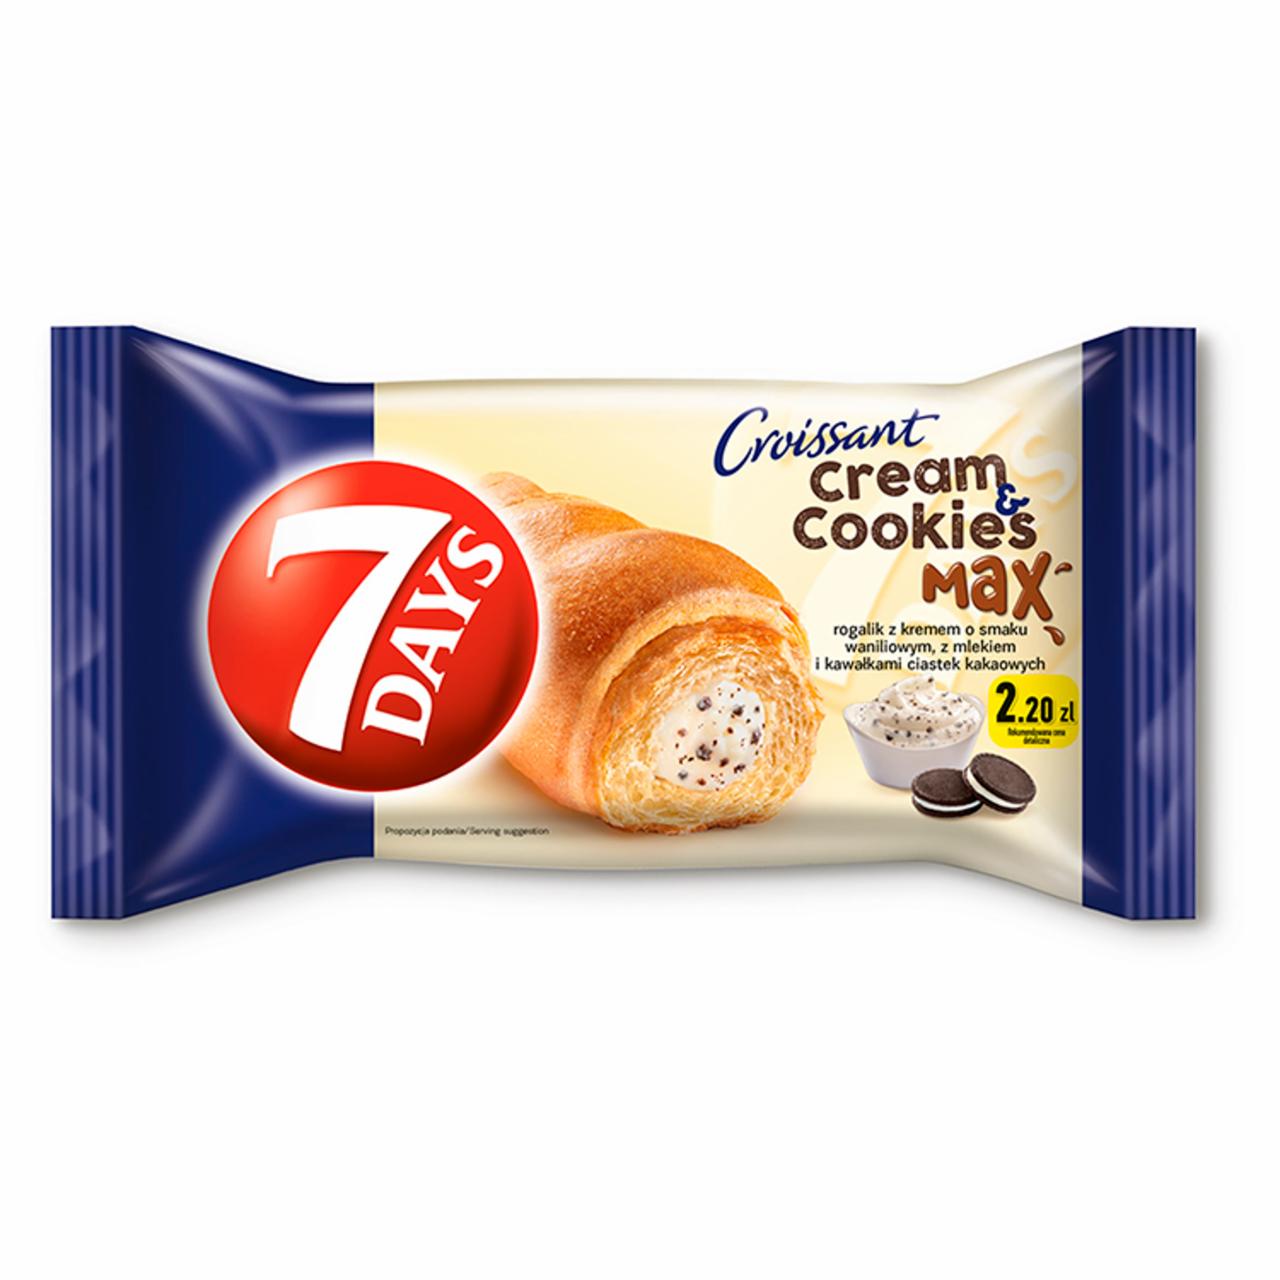 Zdjęcia - 7 Days Cream & Cookies Max Rogalik z kremem o smaku waniliowym z mlekiem i kawałkami ciastek 80 g